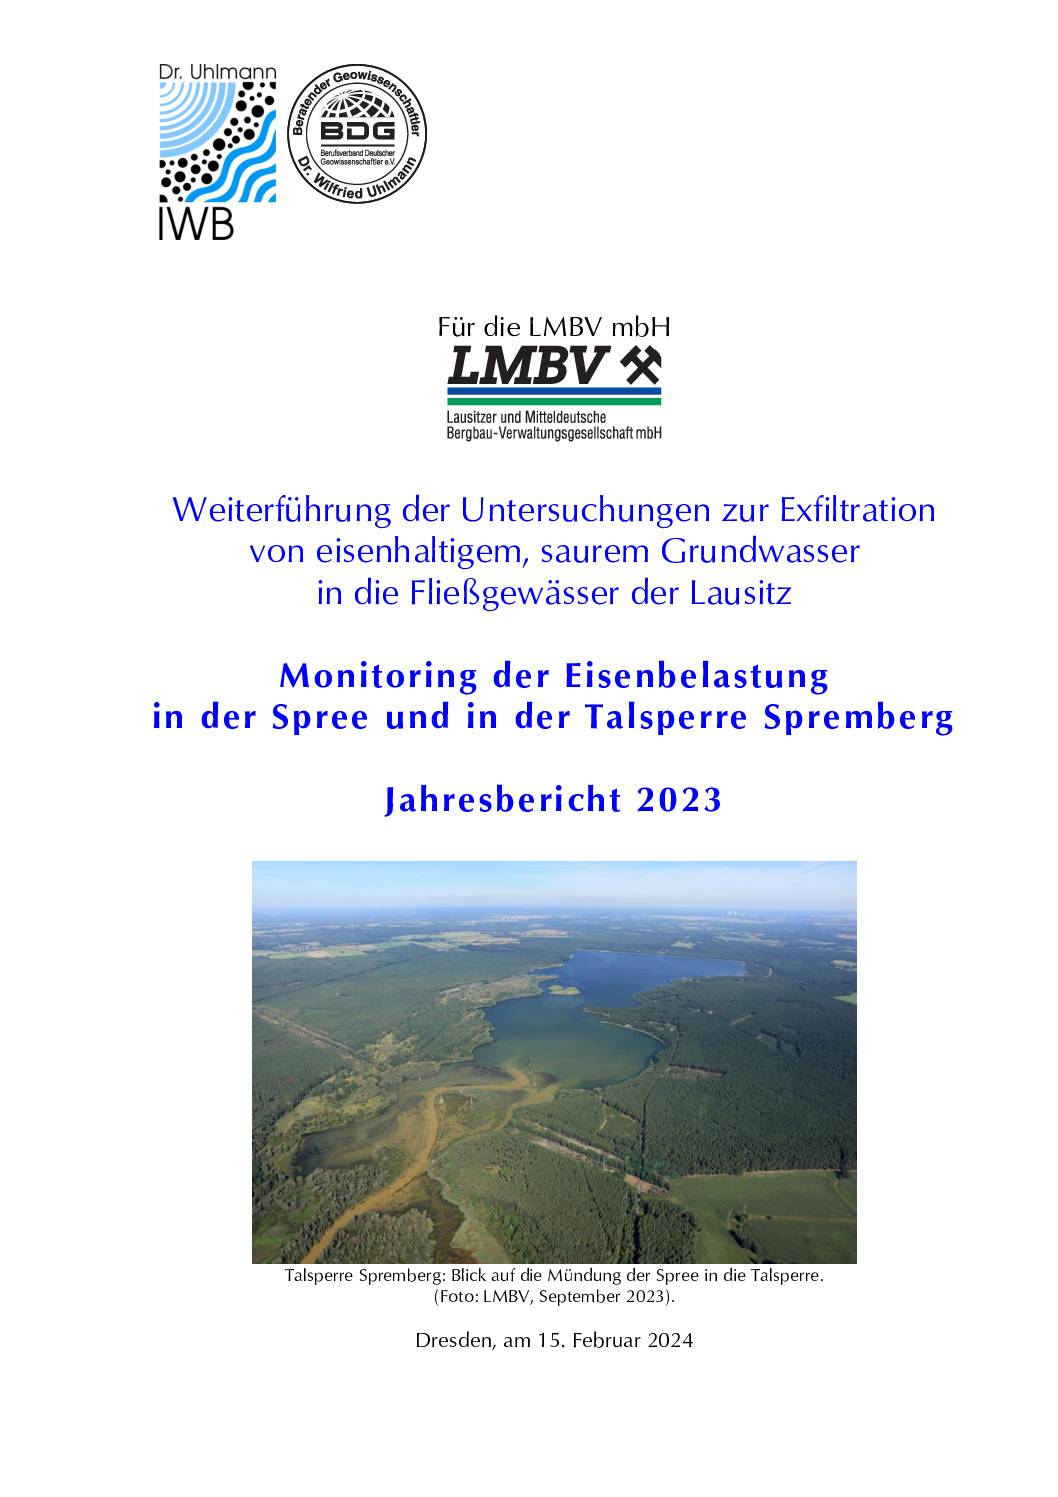 Jahresbericht 2023 zum Monitoring der Eisenbelastung der Spree und in der Talsperre Spremberg pdf